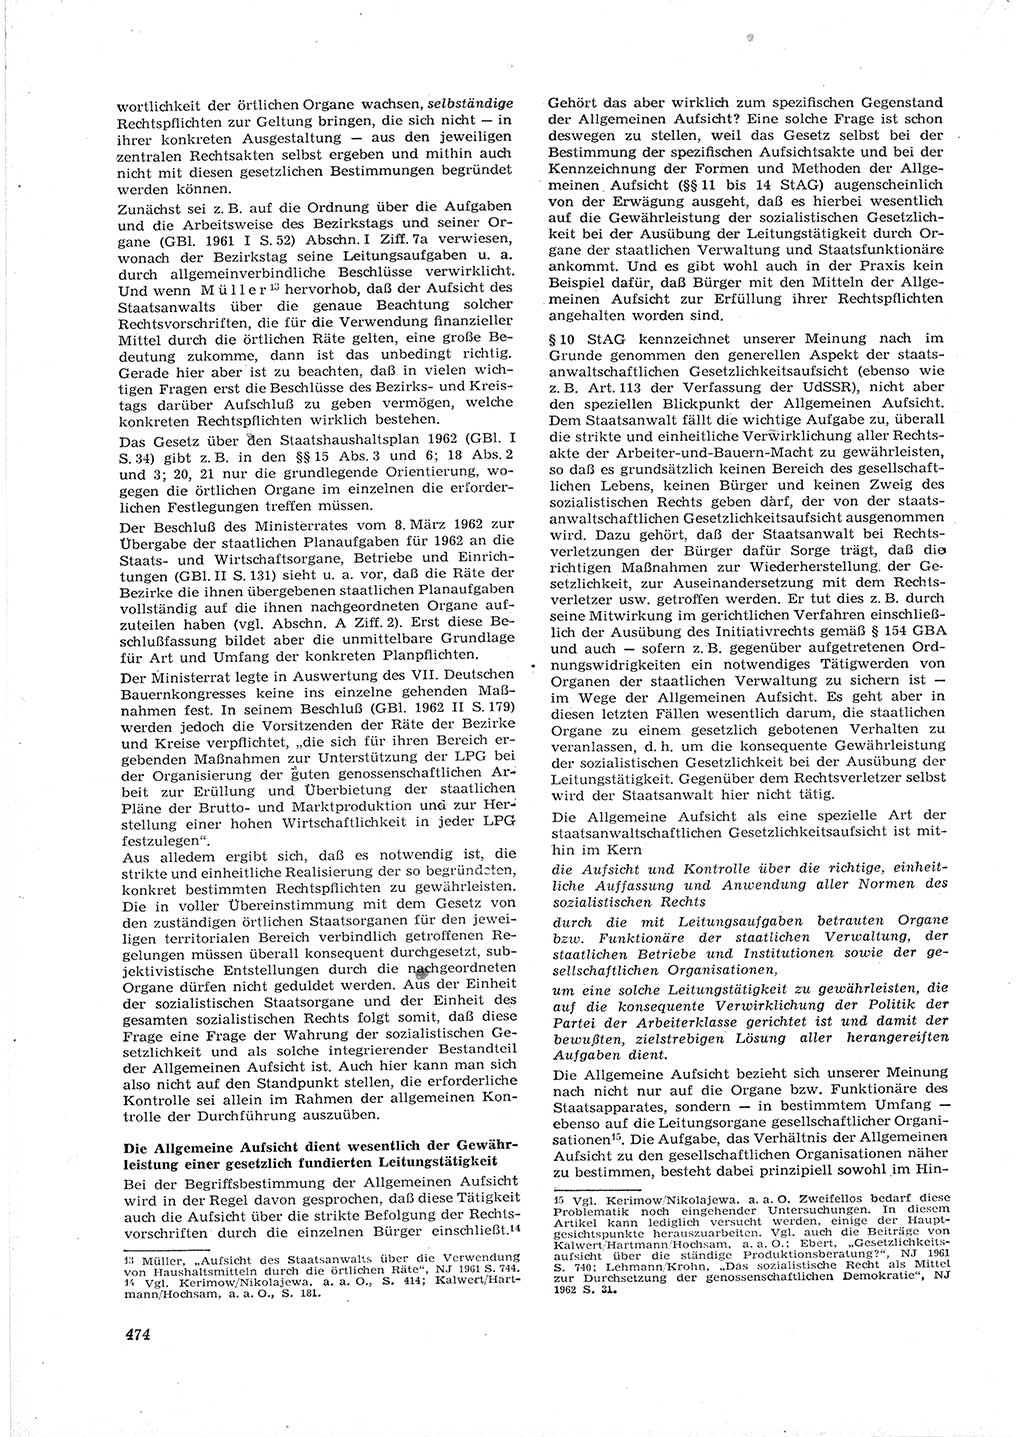 Neue Justiz (NJ), Zeitschrift für Recht und Rechtswissenschaft [Deutsche Demokratische Republik (DDR)], 16. Jahrgang 1962, Seite 474 (NJ DDR 1962, S. 474)